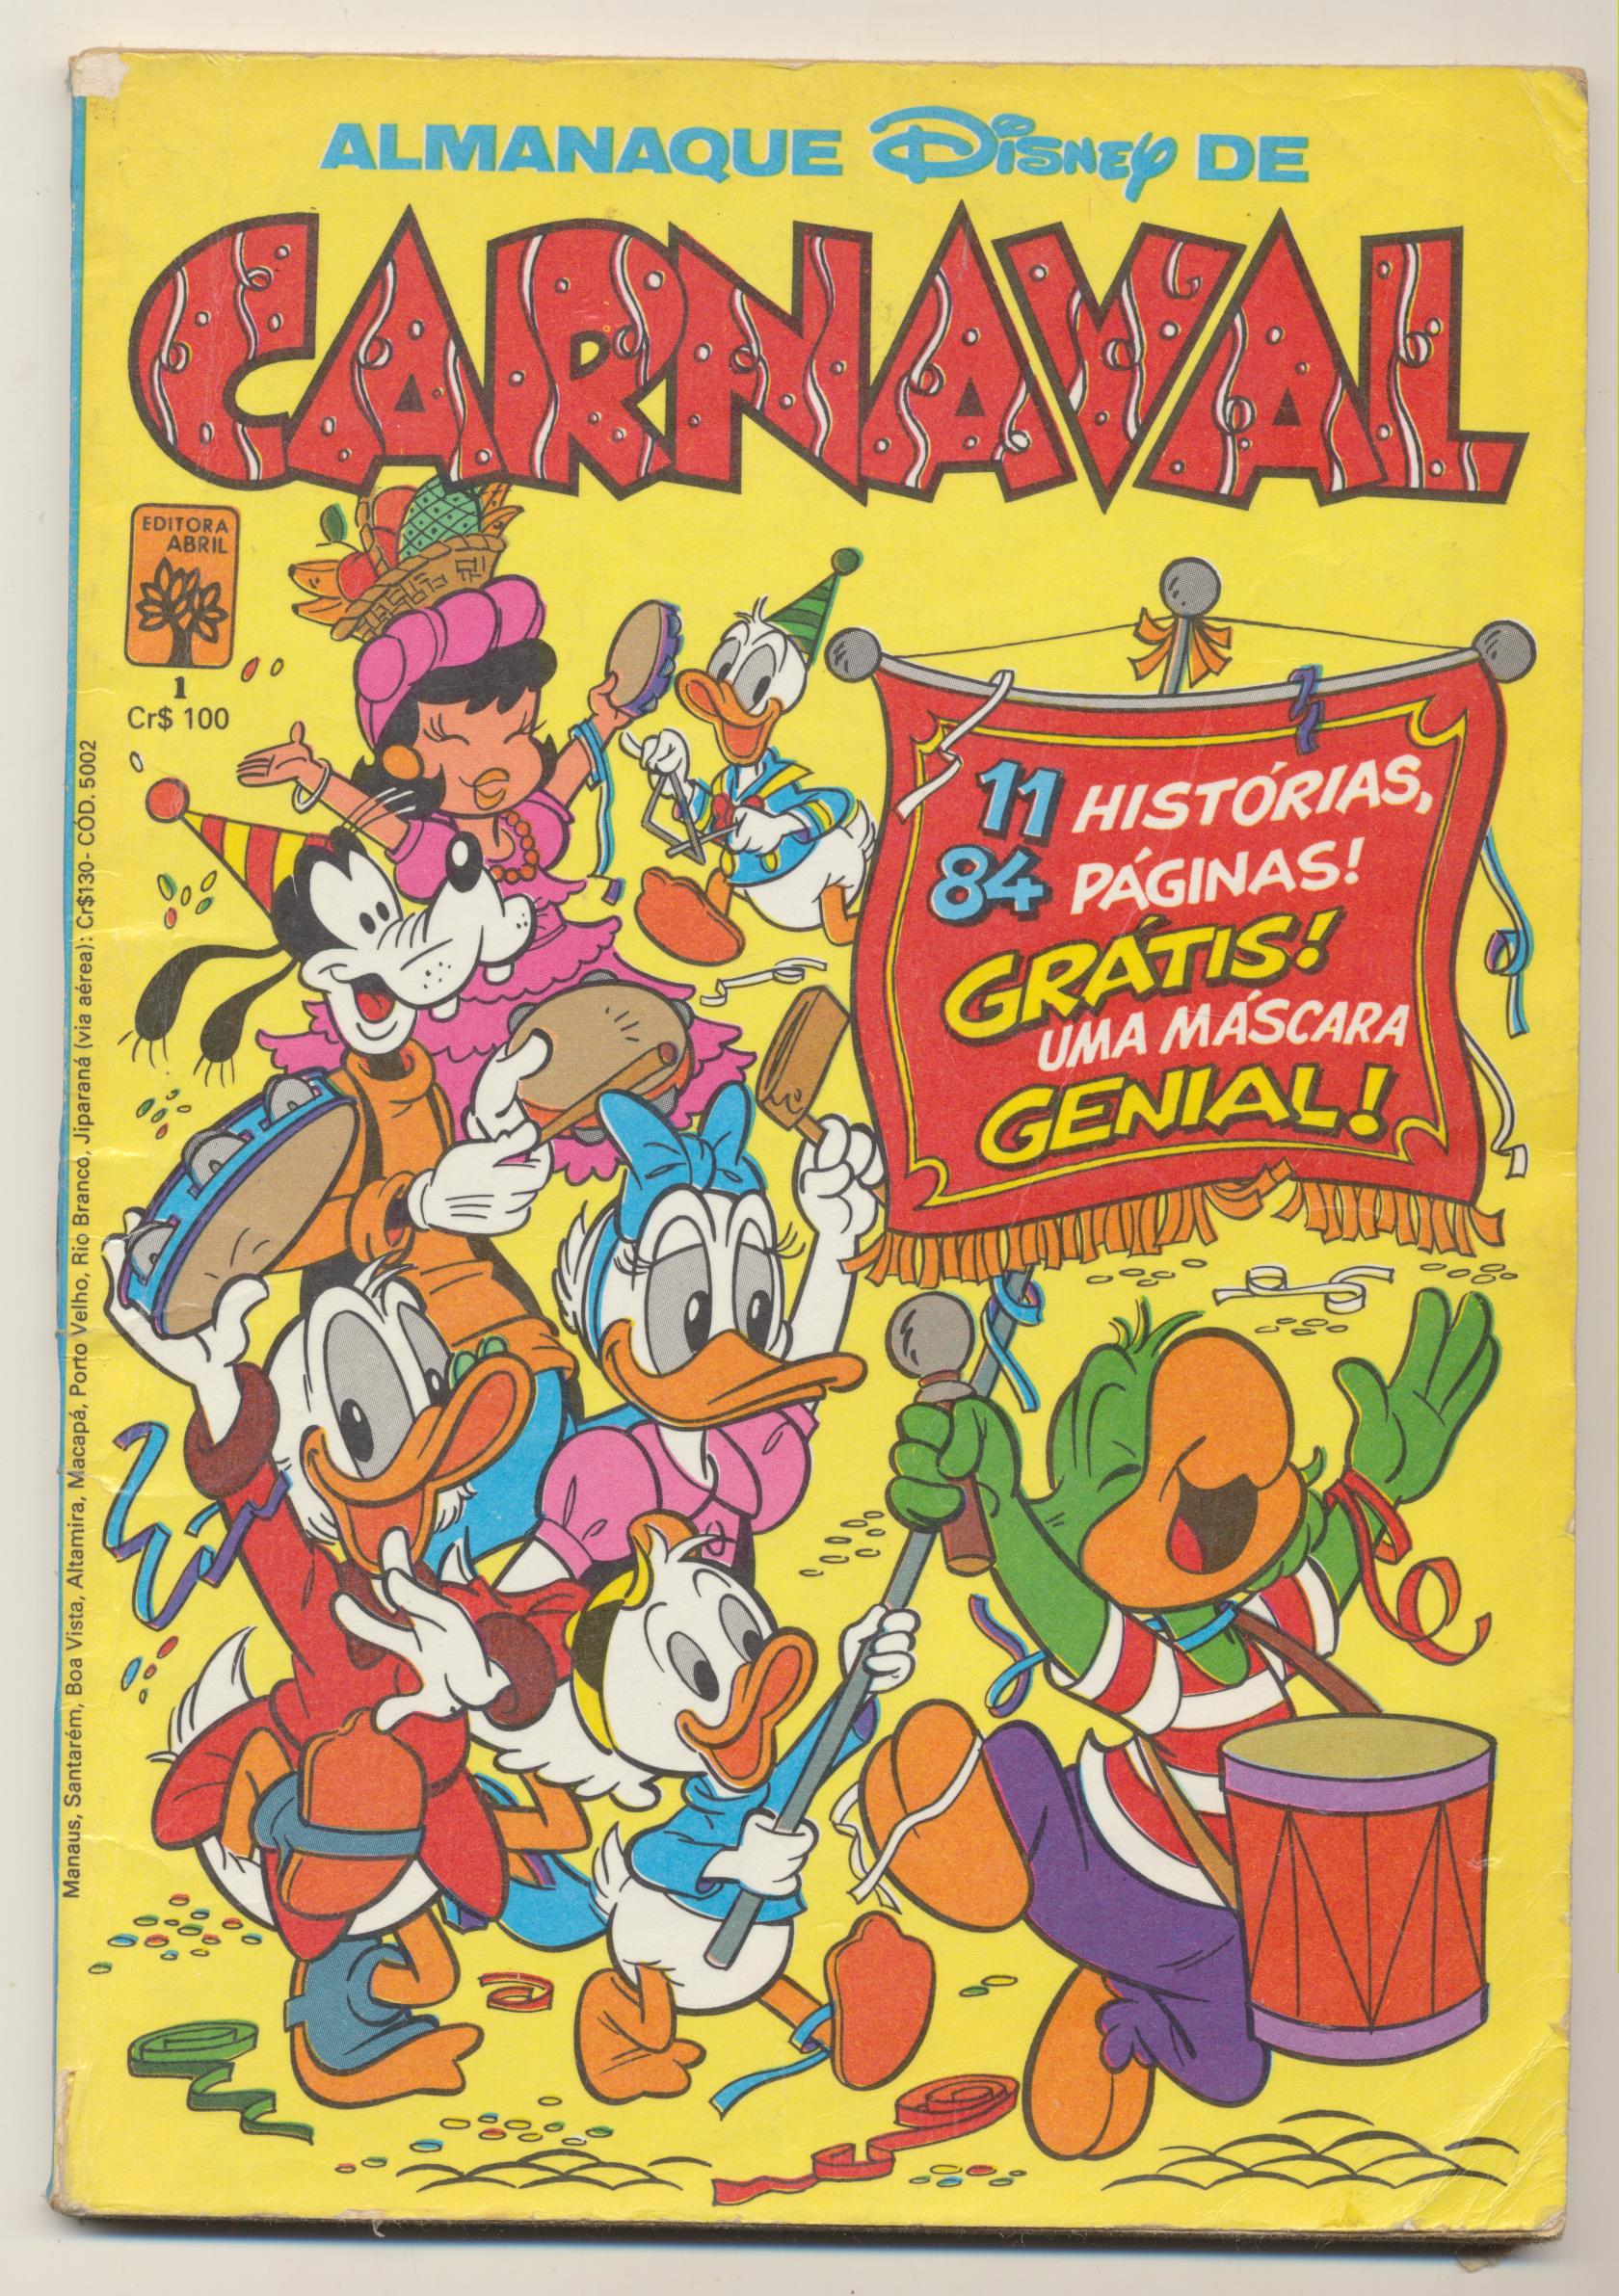 Almanaque Disney de Carnaval nº 1. Sao Paulo. 19x13. 82 paginas color